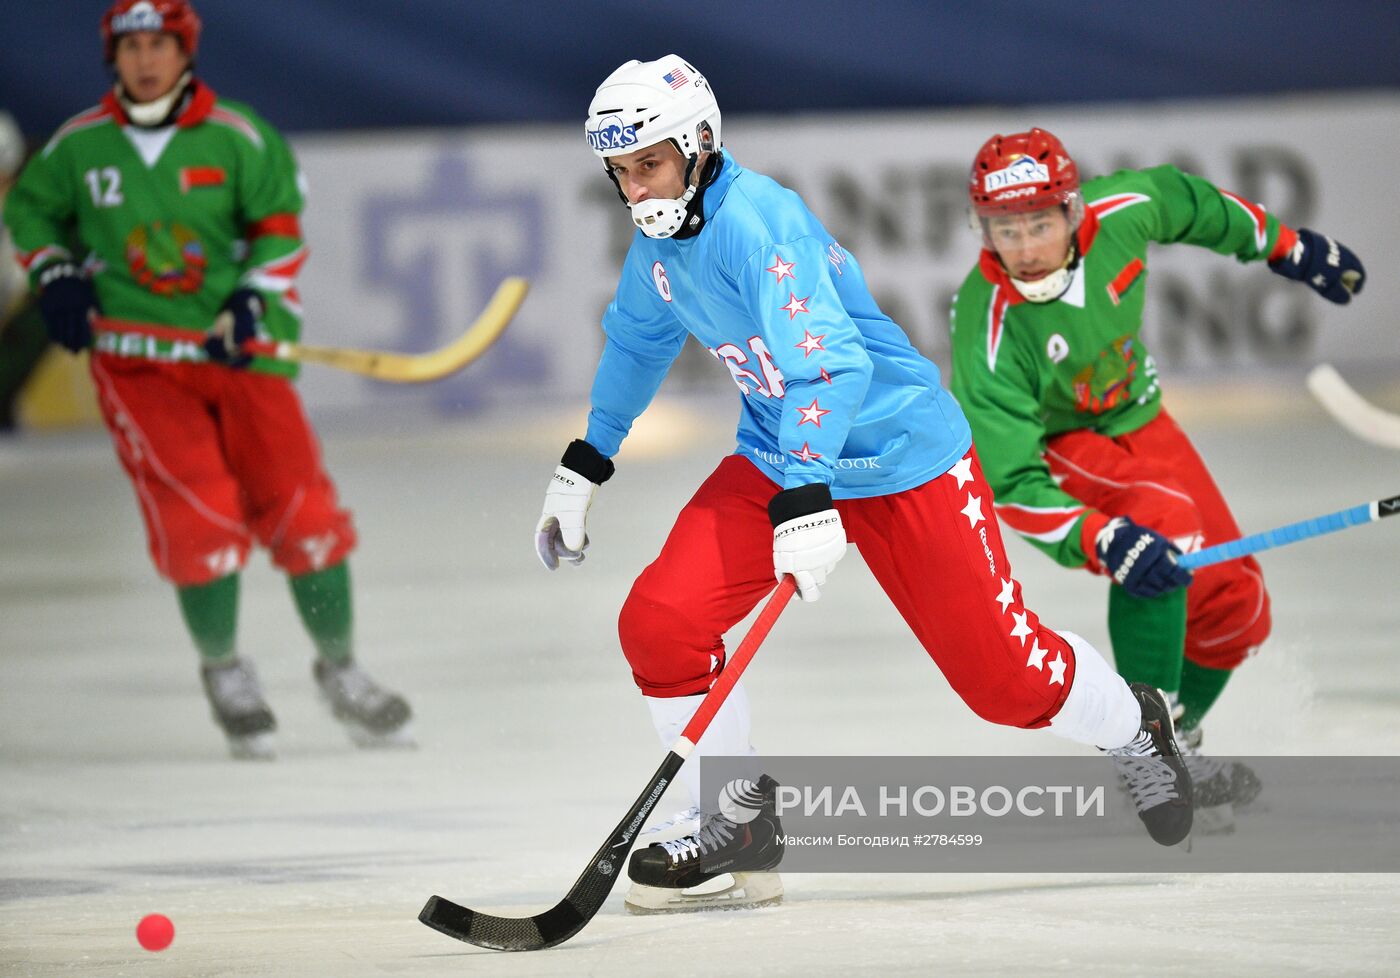 Хоккей с мячом. Чемпионат мира. Матч Белоруссия - США